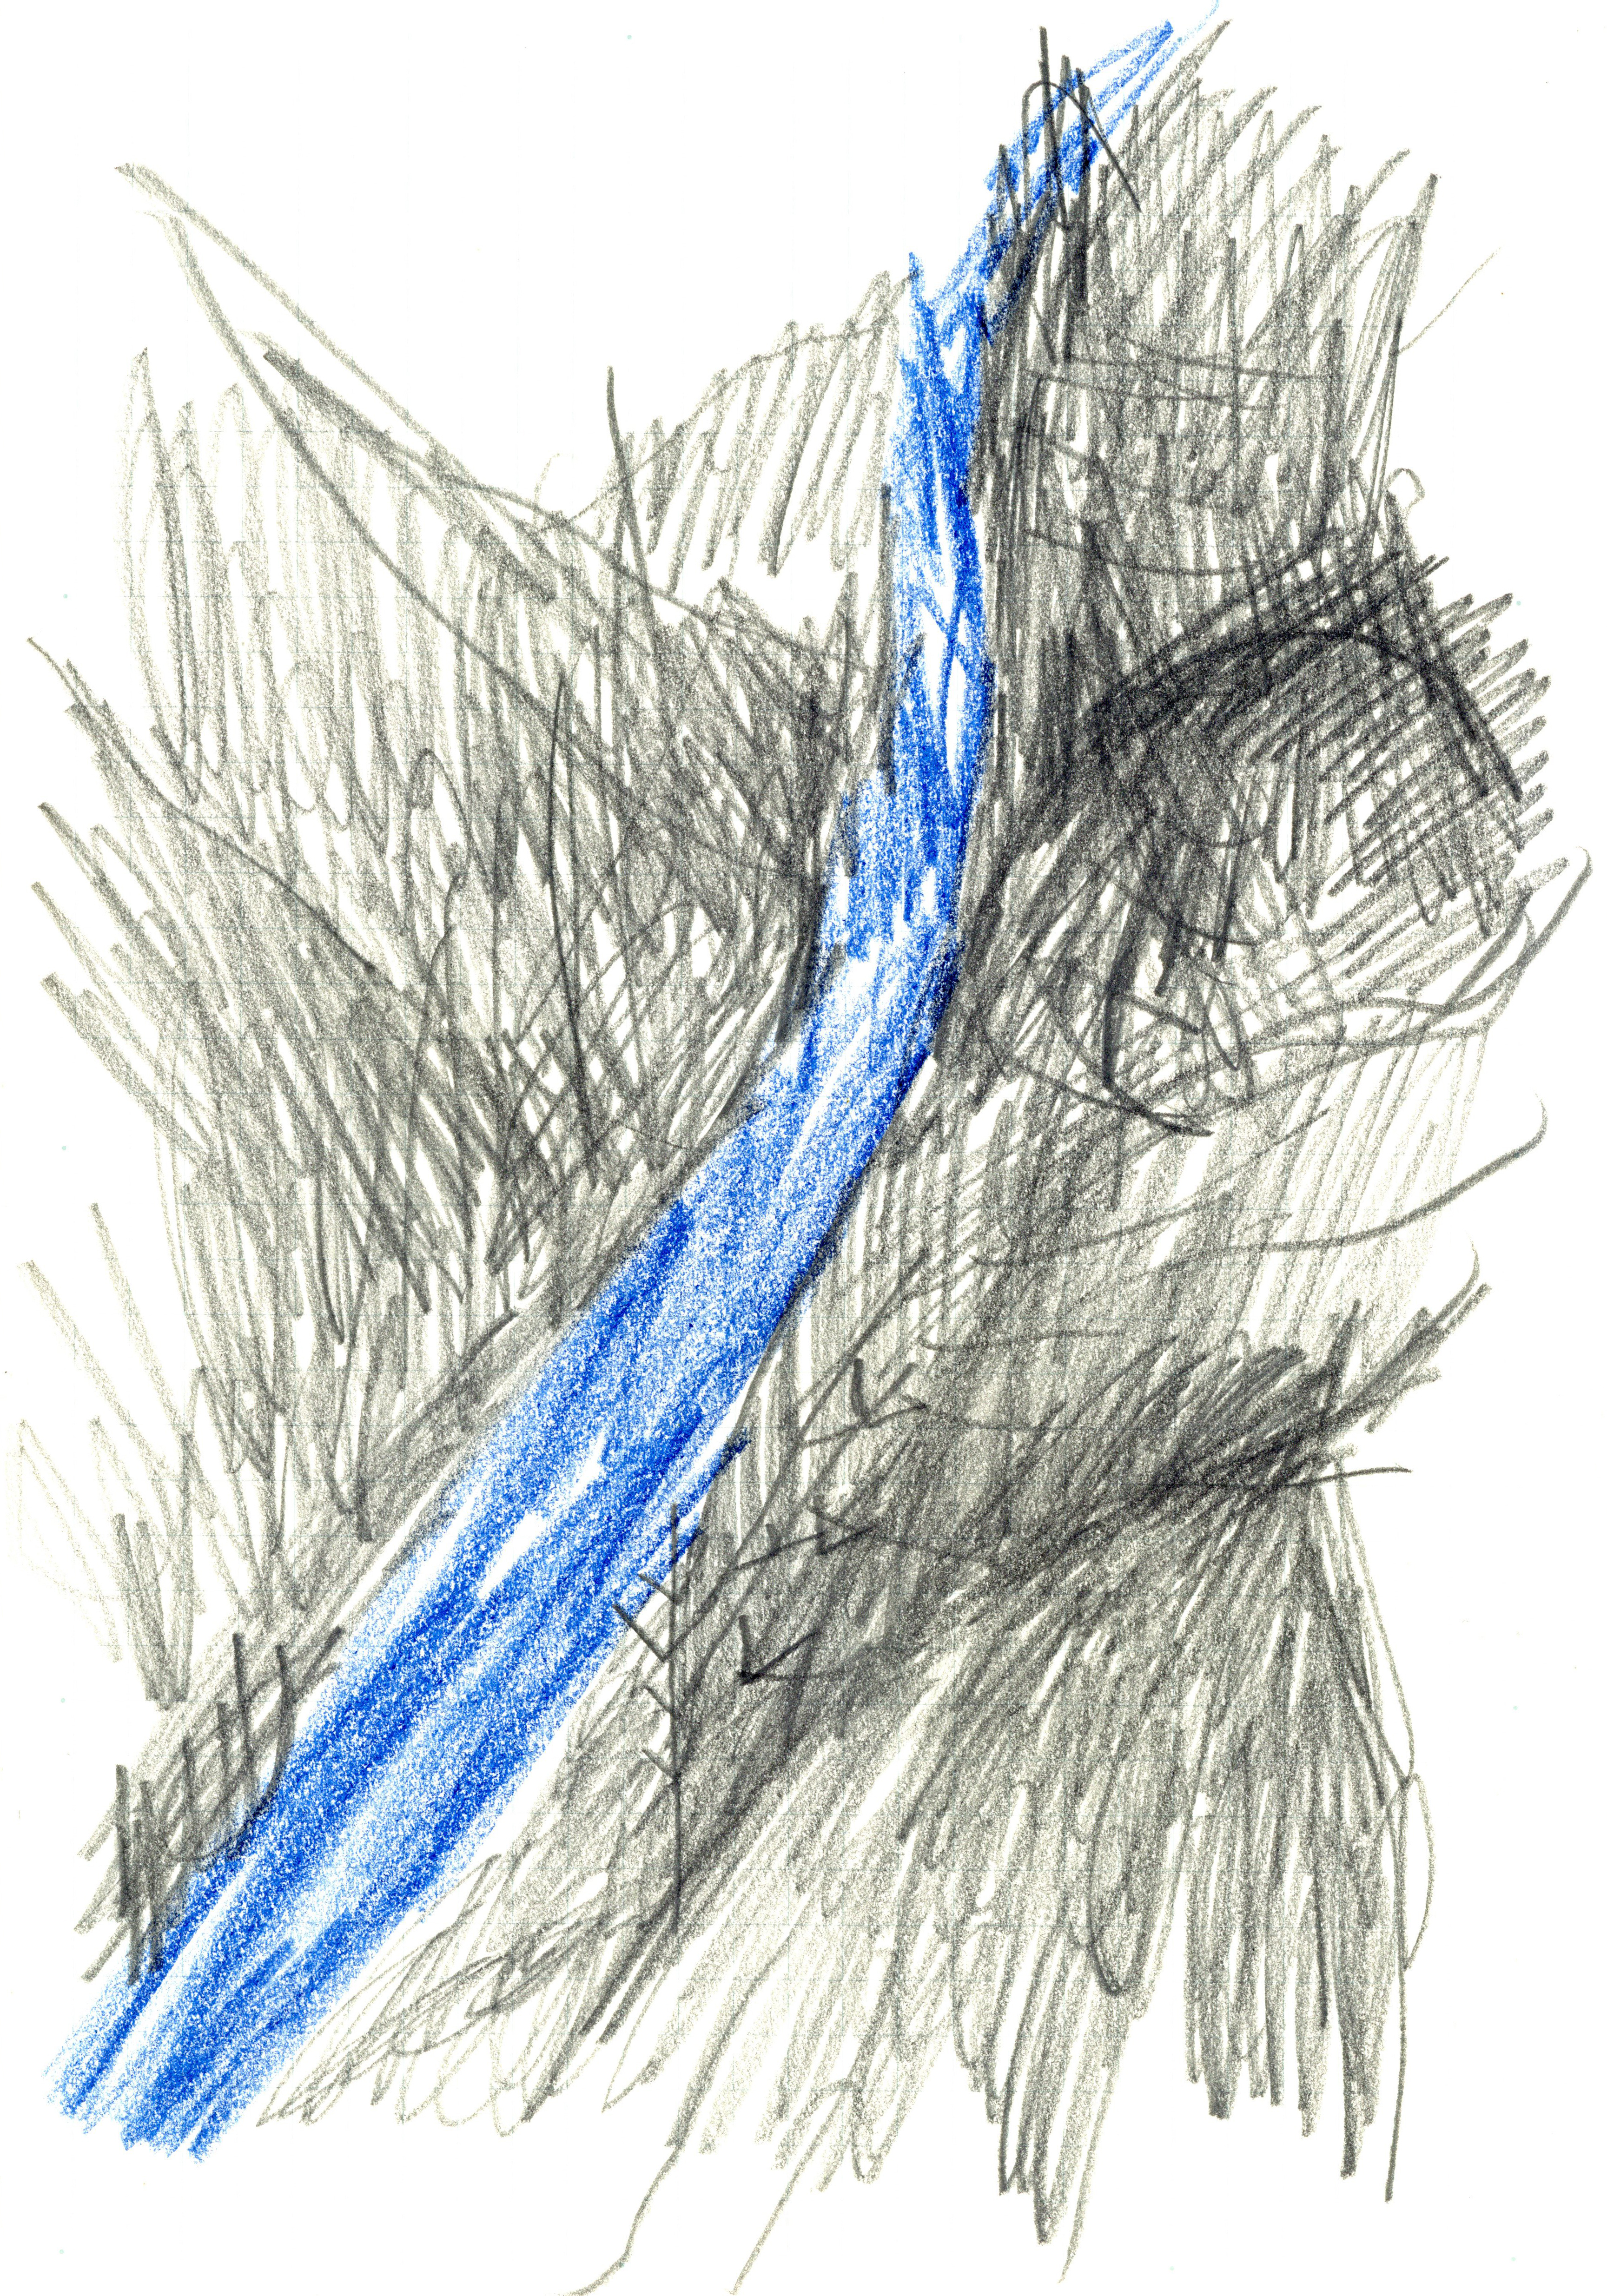 a blue river moving backwards through a mountain range